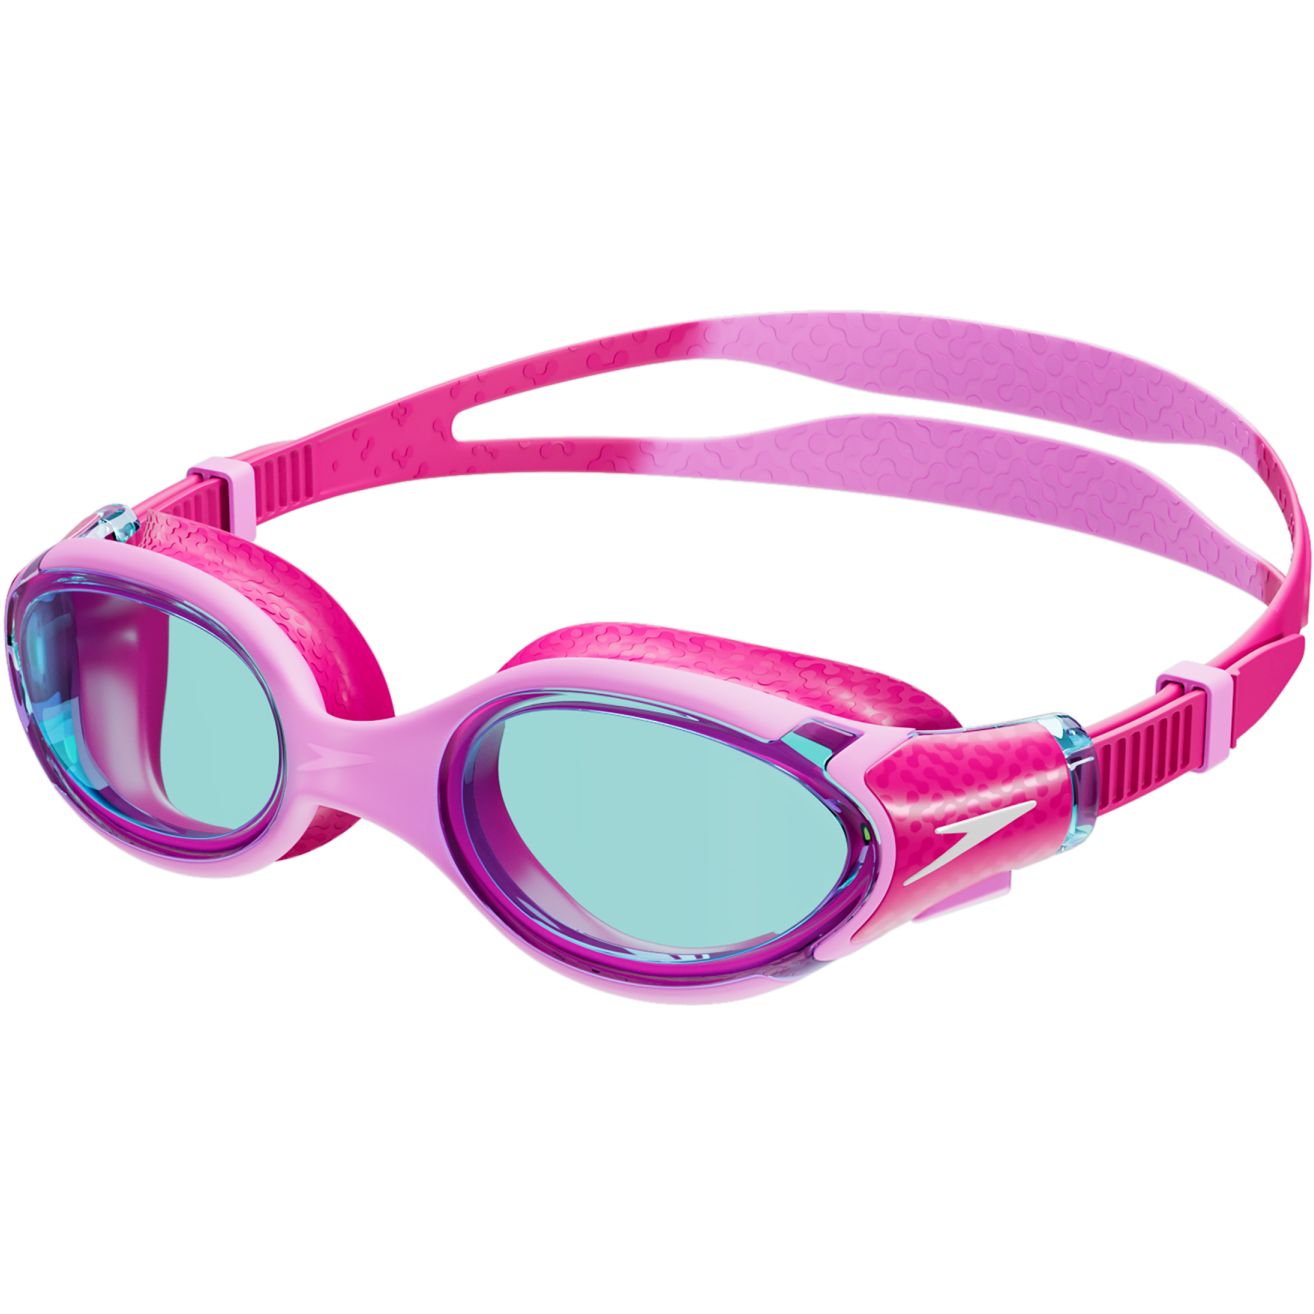 Productfoto van Speedo Biofuse 2.0 Junior Flamingo Pink/Electric Pink/Blue Zwembril